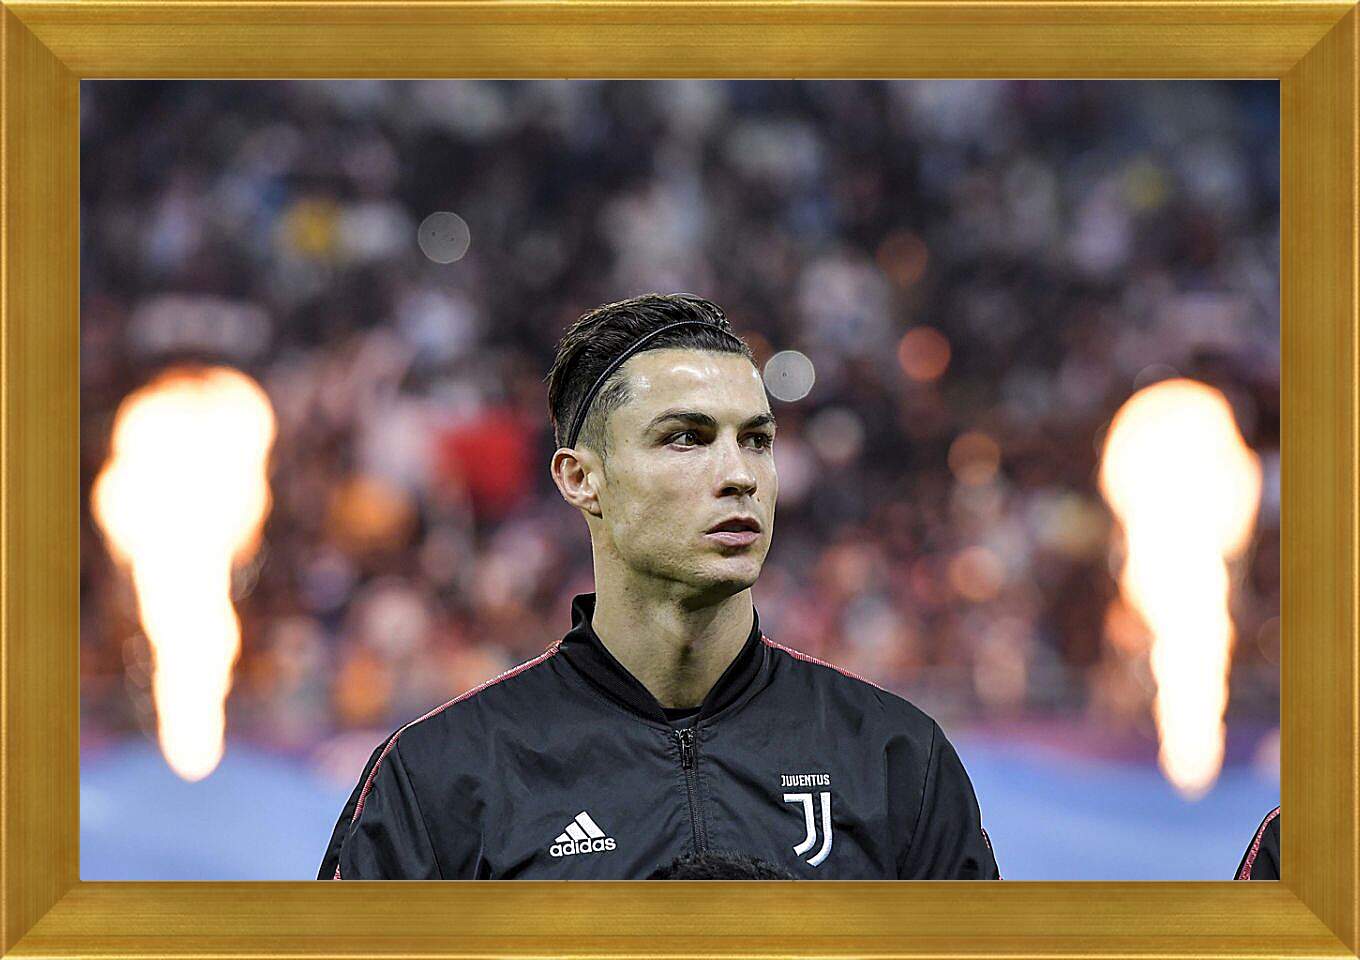 Картина в раме - Криштиану Роналду (Cristiano Ronaldo)